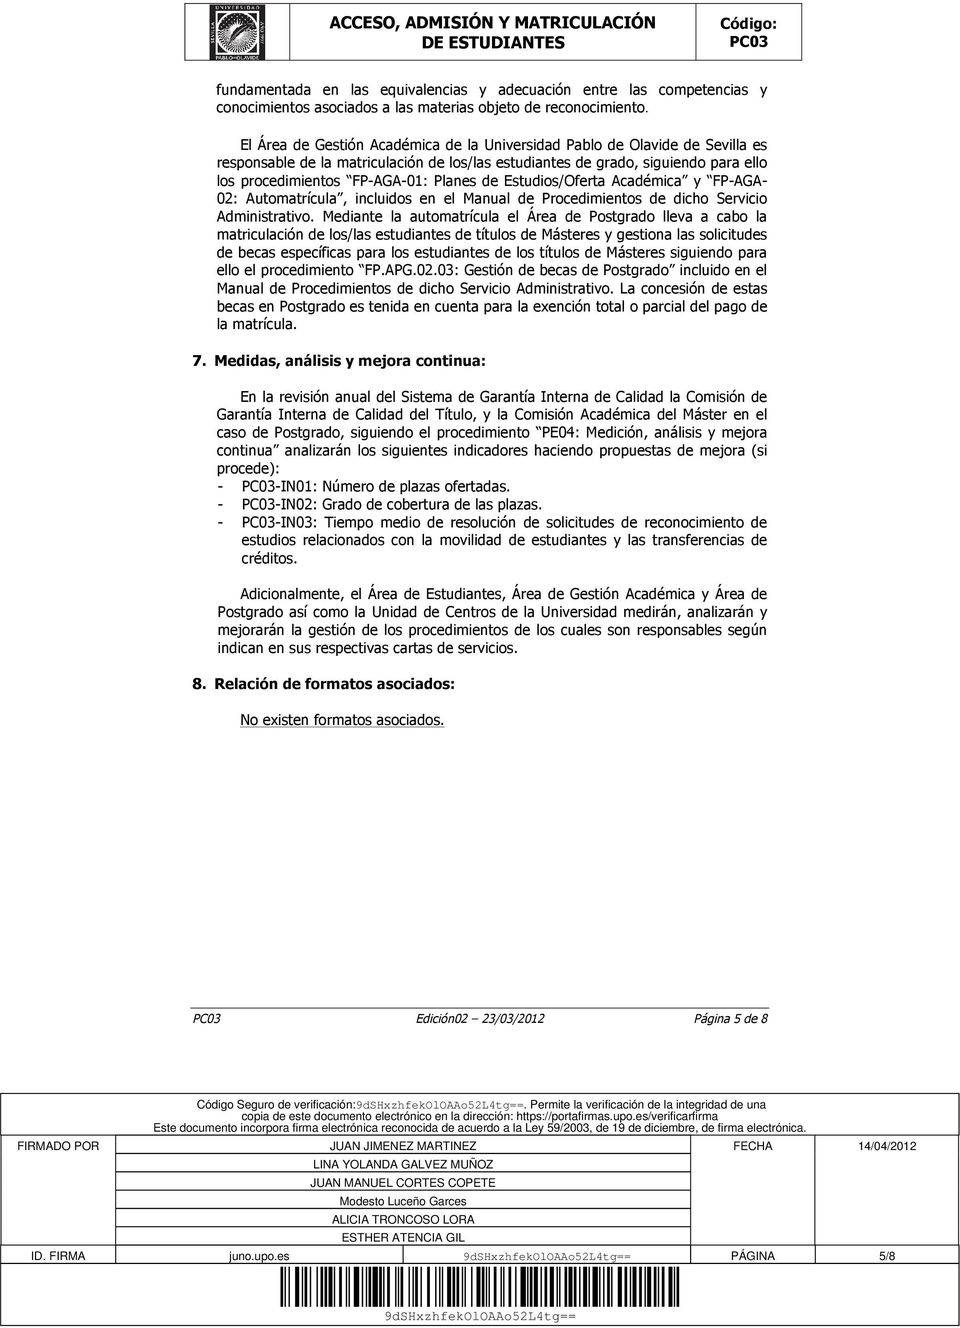 de Estudios/Oferta Académica y FP-AGA- 02: Automatrícula, incluidos en el Manual de Procedimientos de dicho Servicio Administrativo.